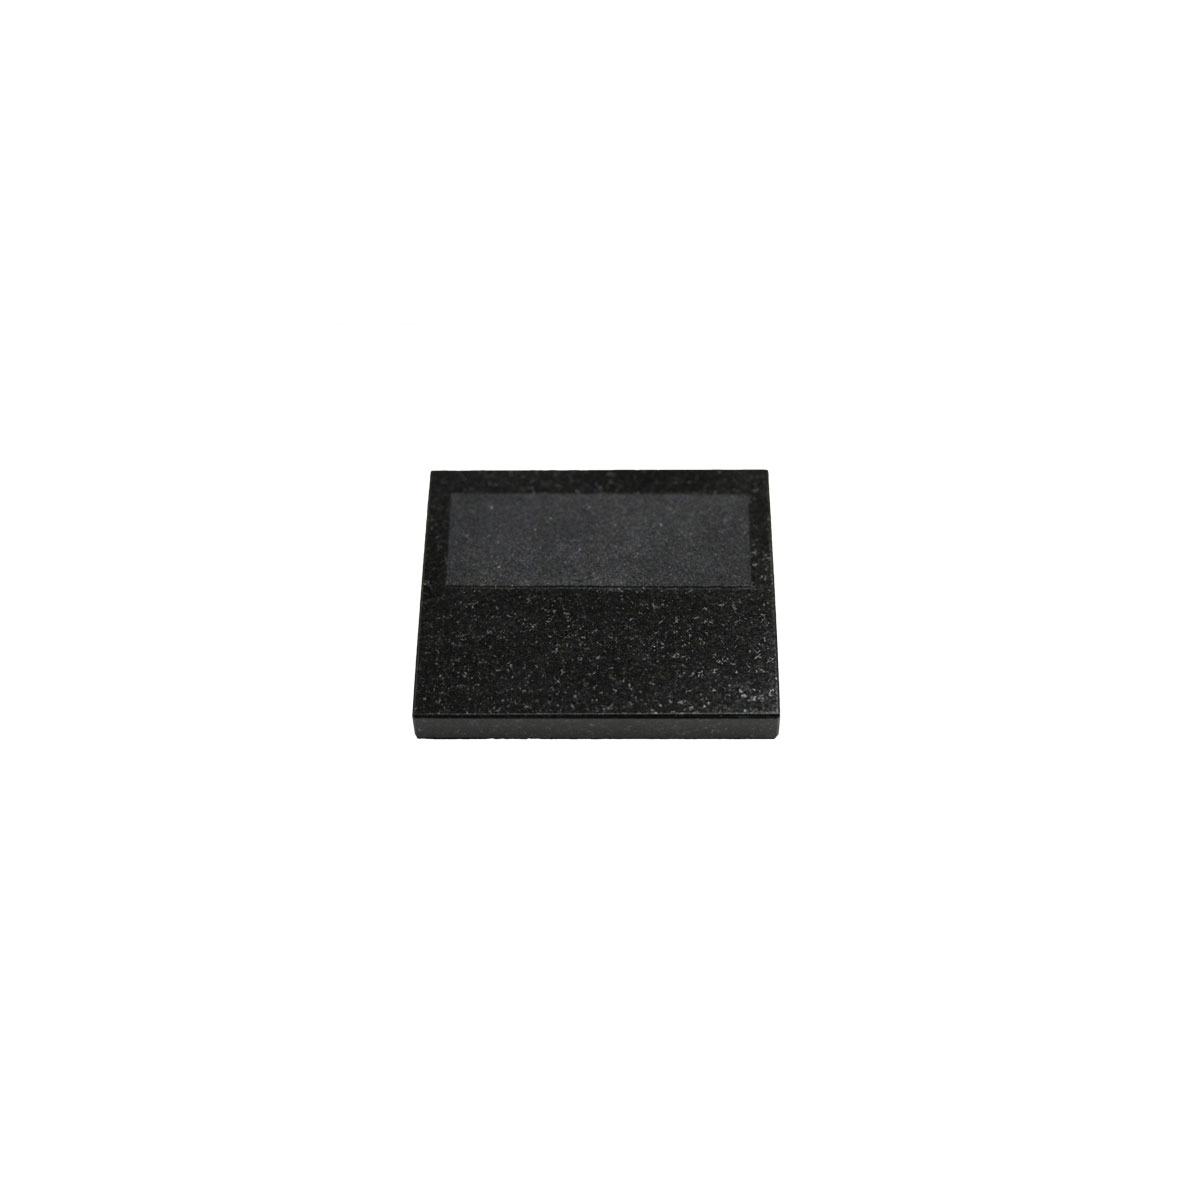 Steuben Desk Accessory, Granite 3" x 3.5" Black Base